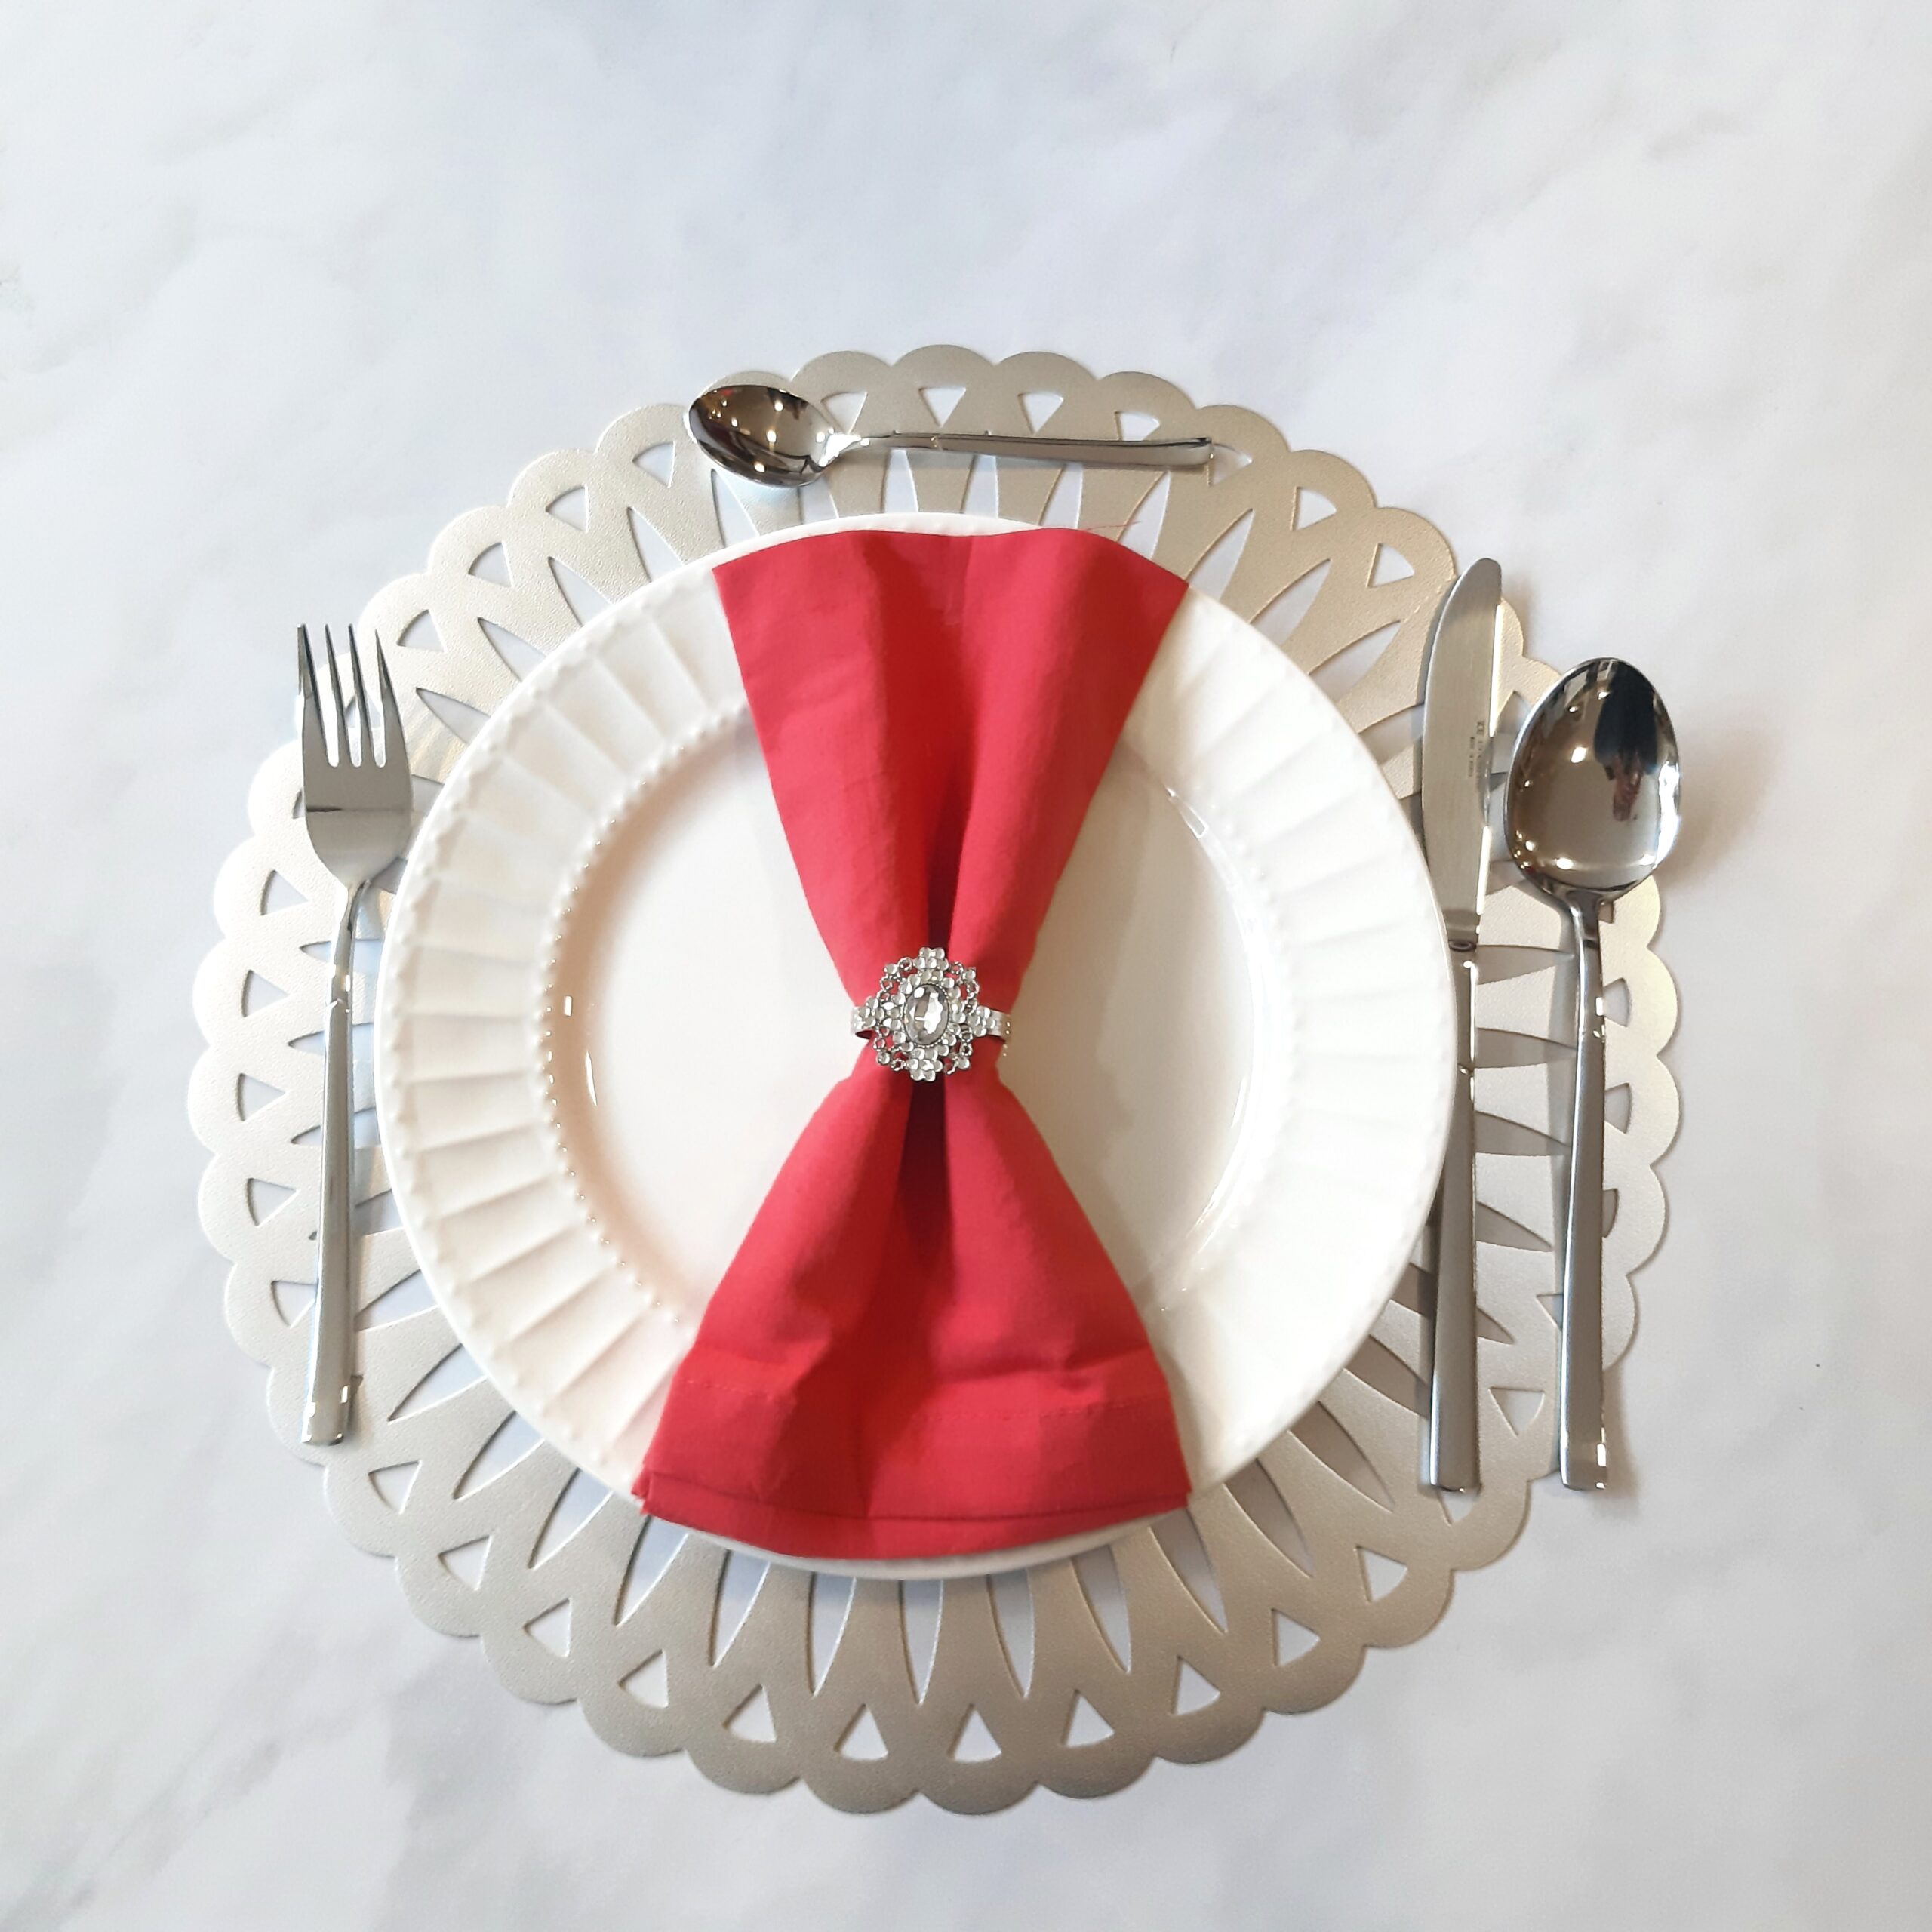 6 piezas/set servilletas de mesa de tela, servilletas de tela con adornos  festoneados minimalistas para mesa de comedor, Mode de Mujer